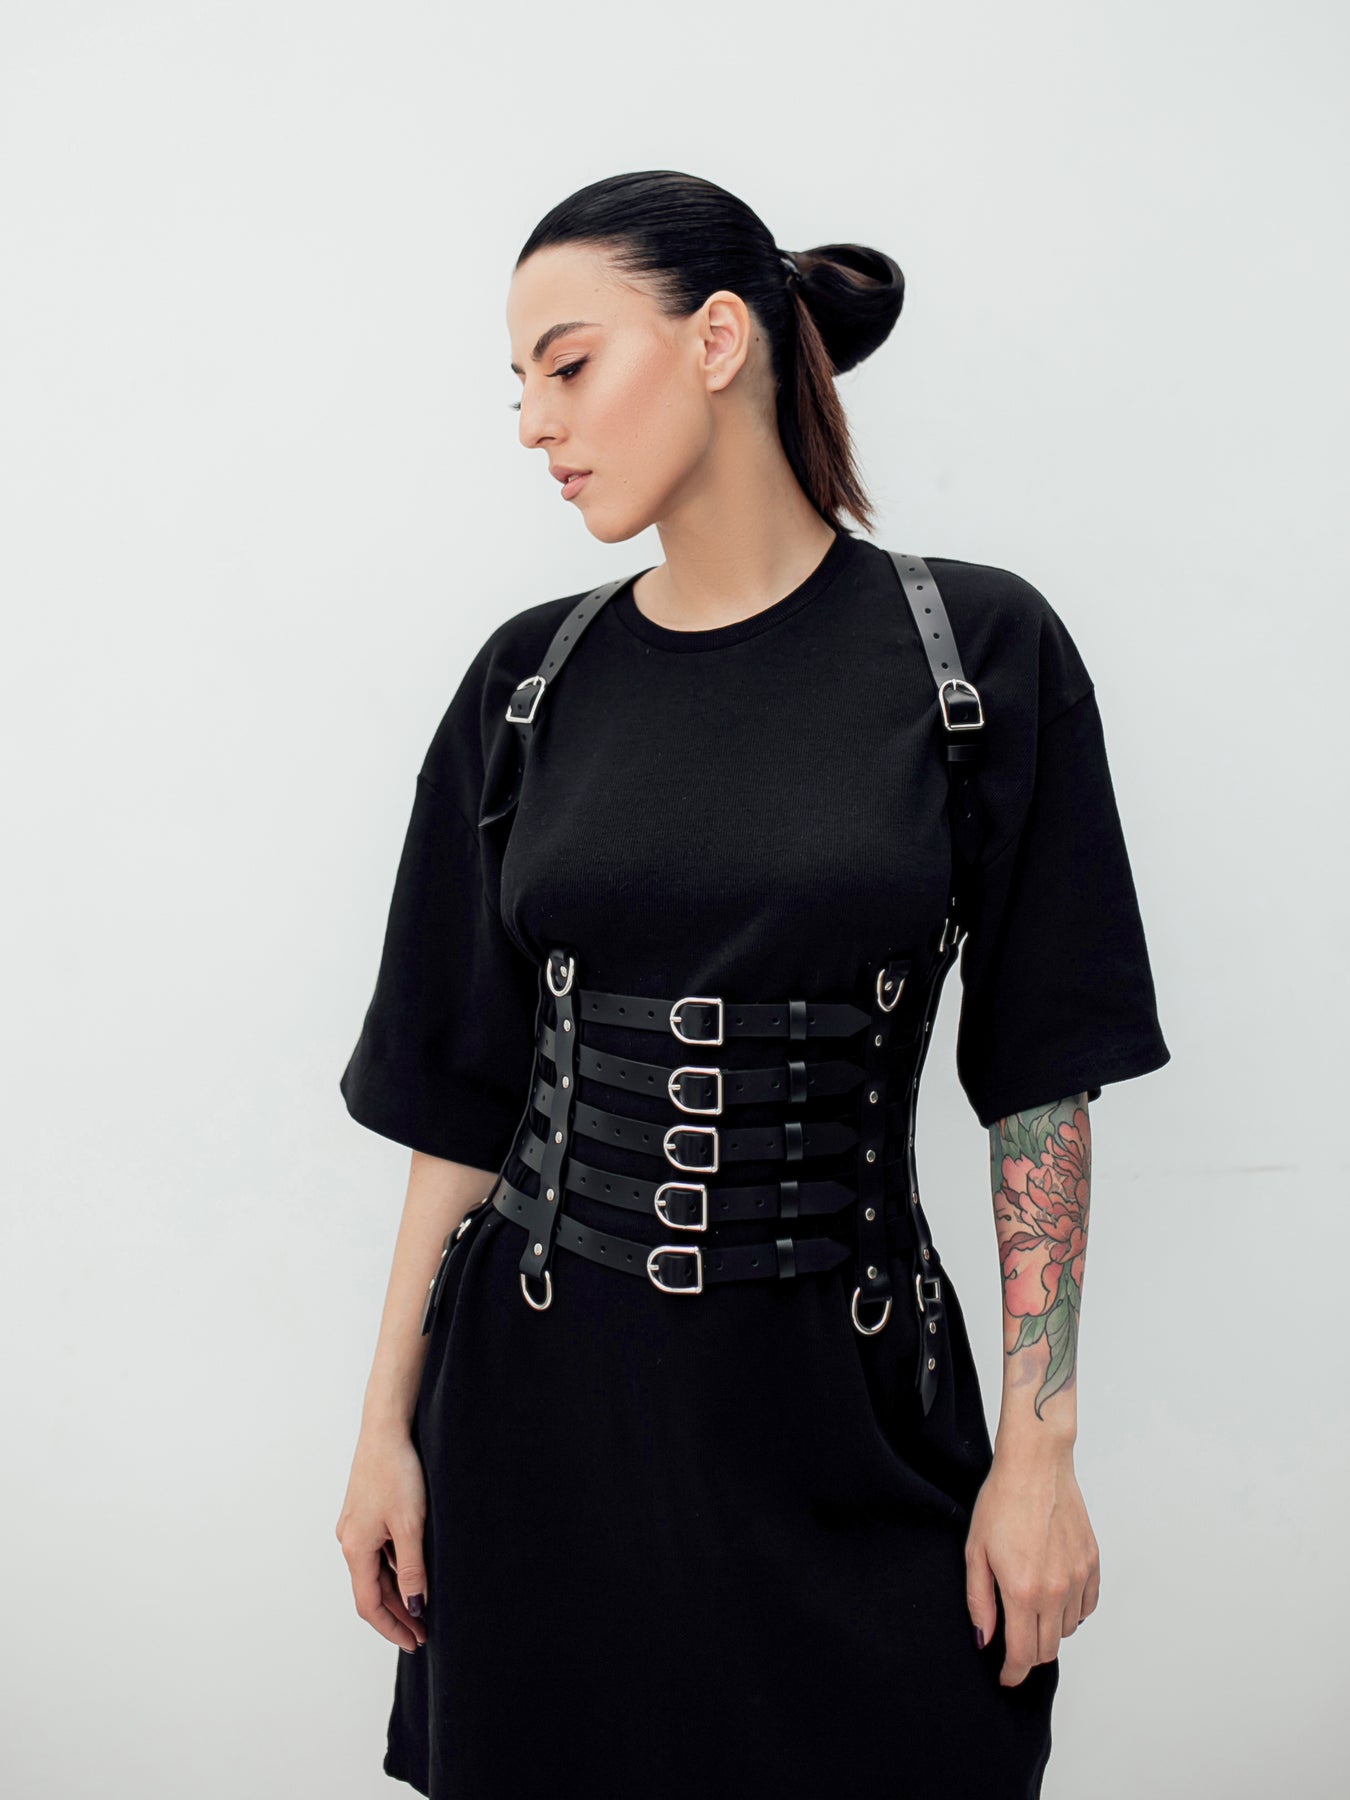 Fall in Love Harness - buy online, Leather body harness in Bleak&Sleek, USA